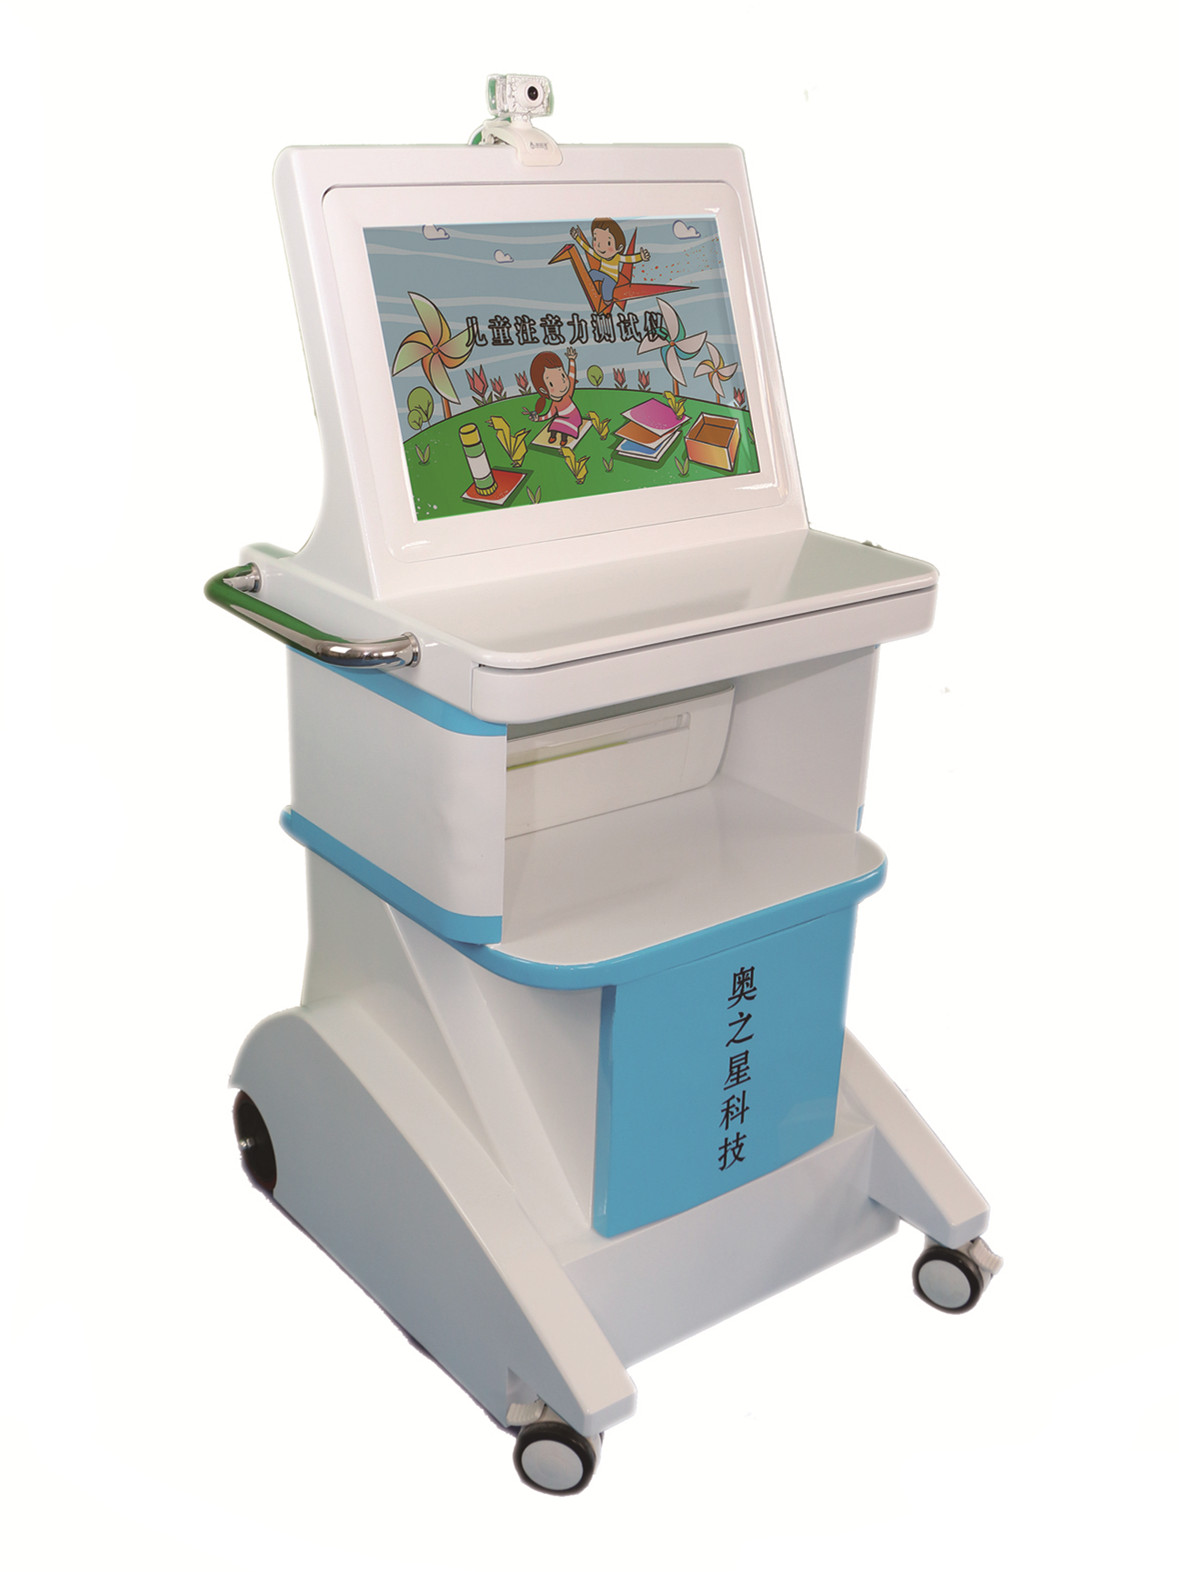 儿童综合素质测试仪 儿童健康管理平台 儿童注意力测试仪